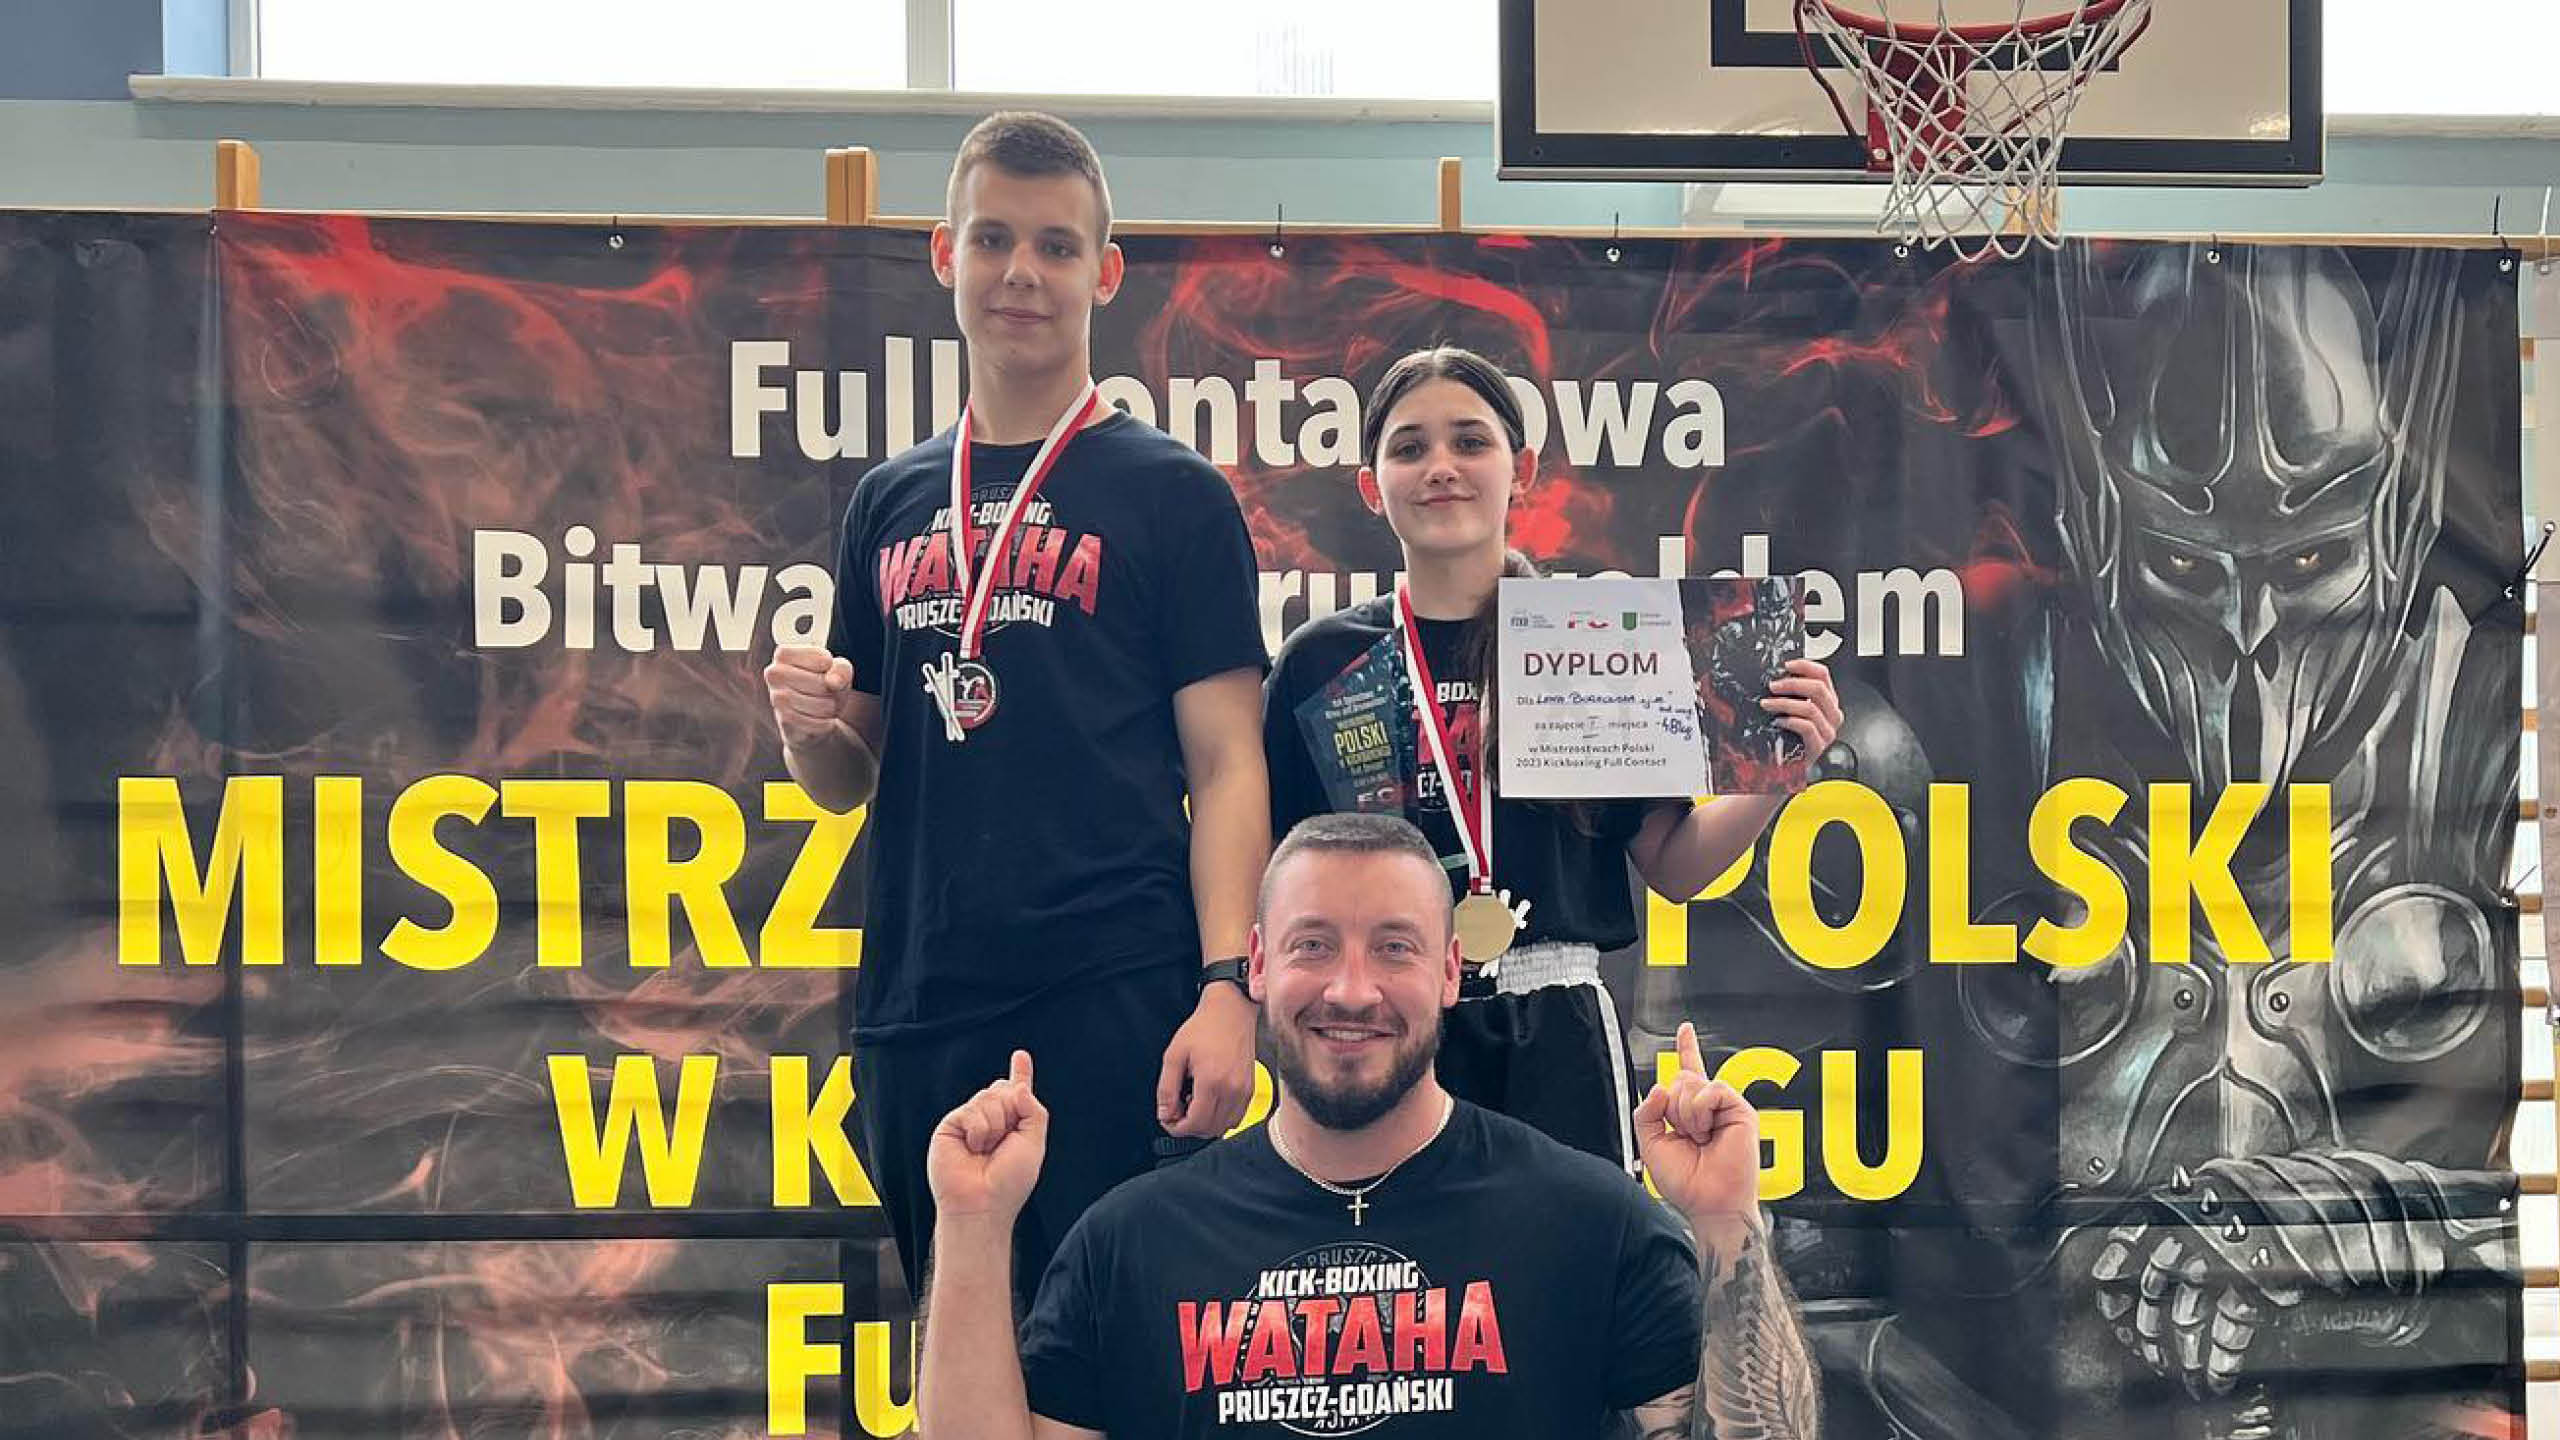 Dwoje zwycięzców z pruszczańskiego klubu w Mistrzostwach Polski w kickboxingu w formule full contact